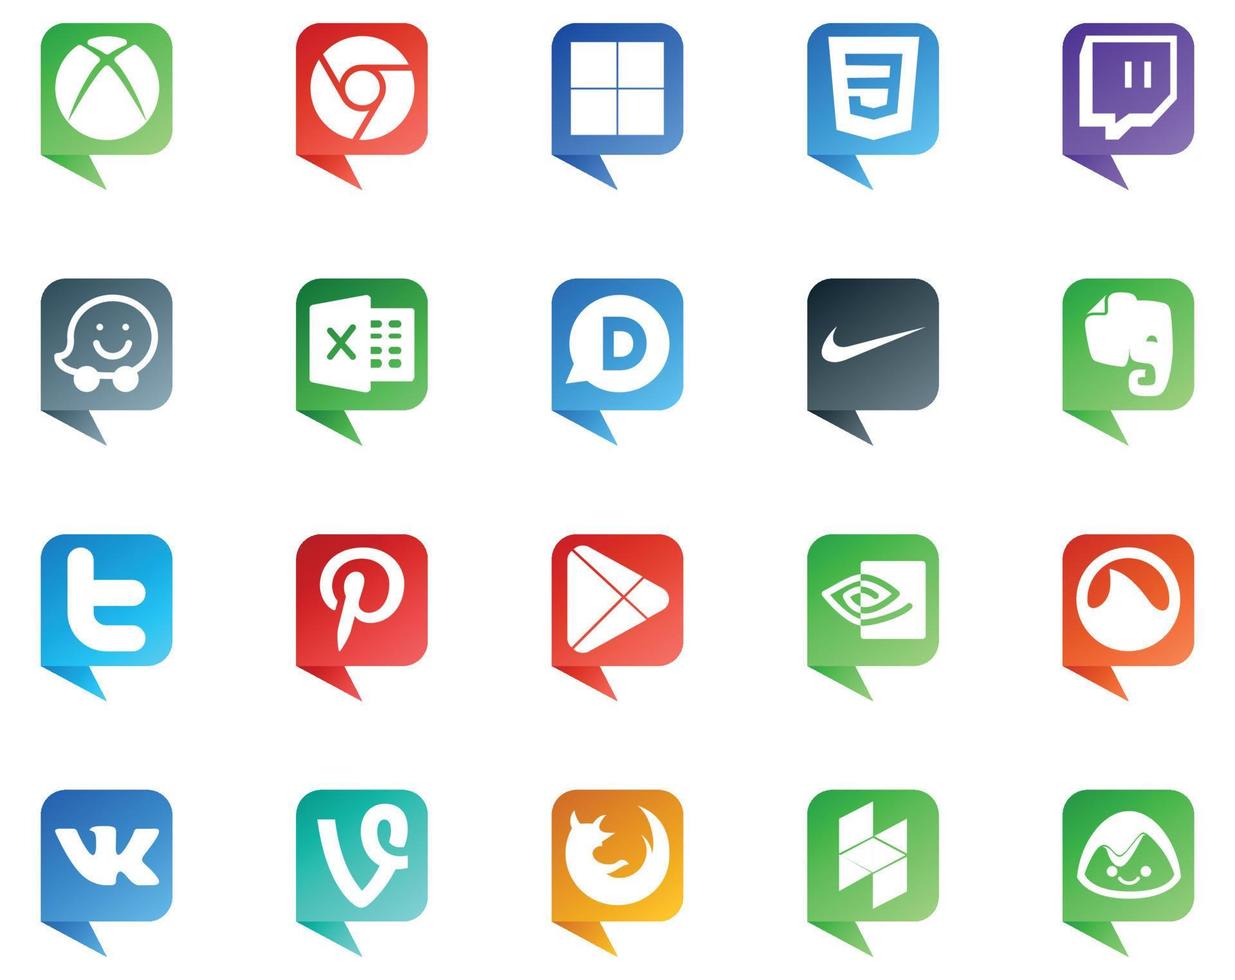 20 sociale media discorso bolla stile logo piace vk nvidia nike applicazioni Pinterest vettore